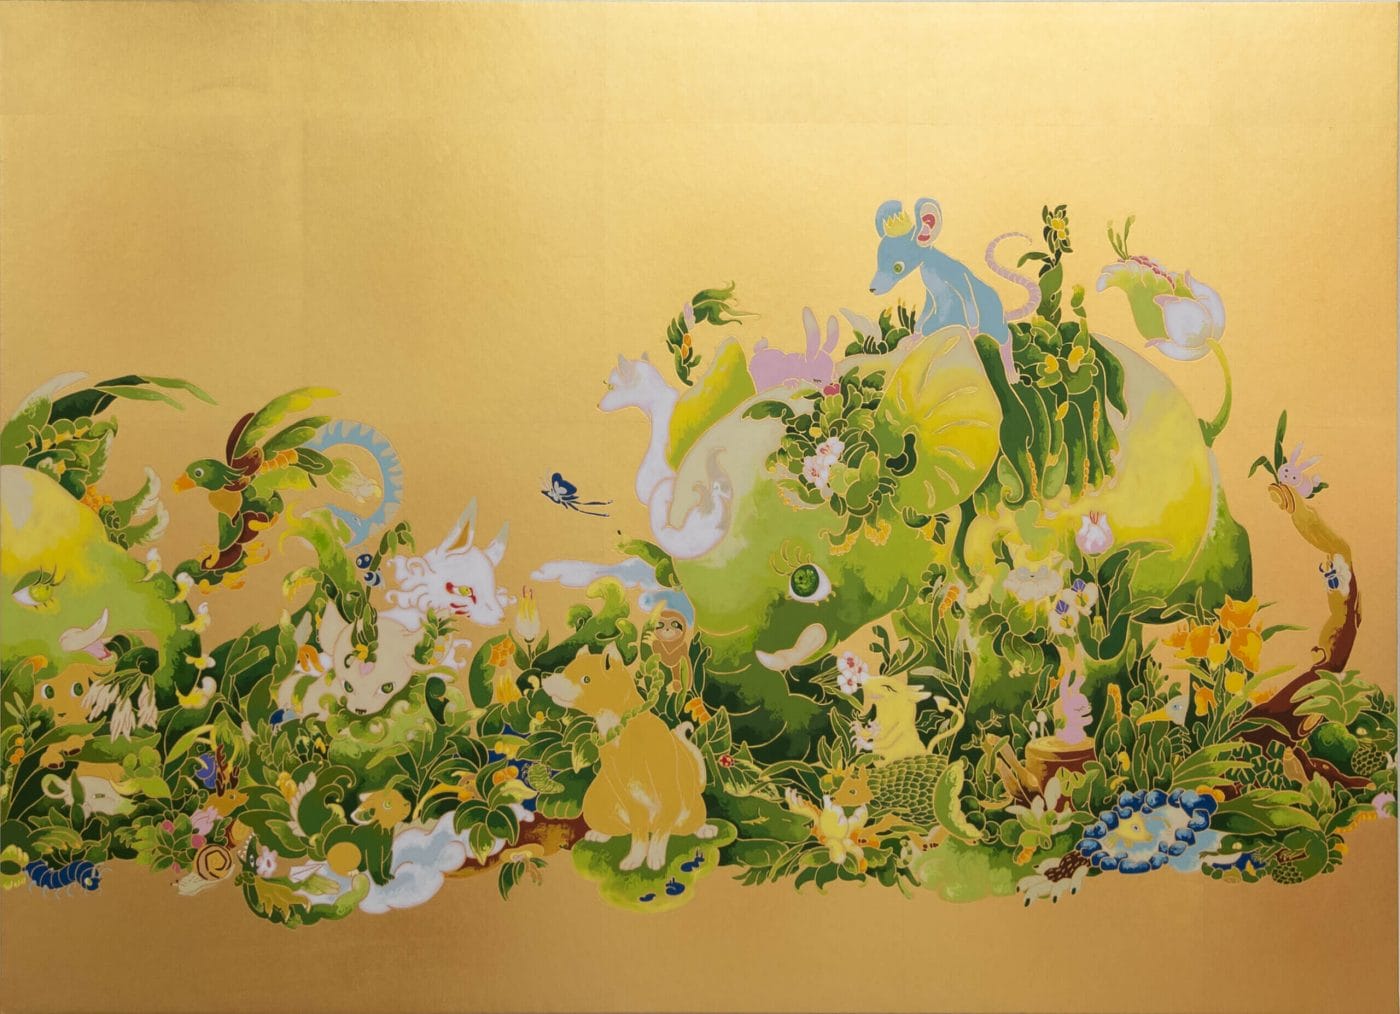 愛らしい顔の動物たちが暮らす森の情景を描く住吉明子の個展「水平線と紆余曲折（再）」、TEZUKAYAMA GALLERYにて開催。